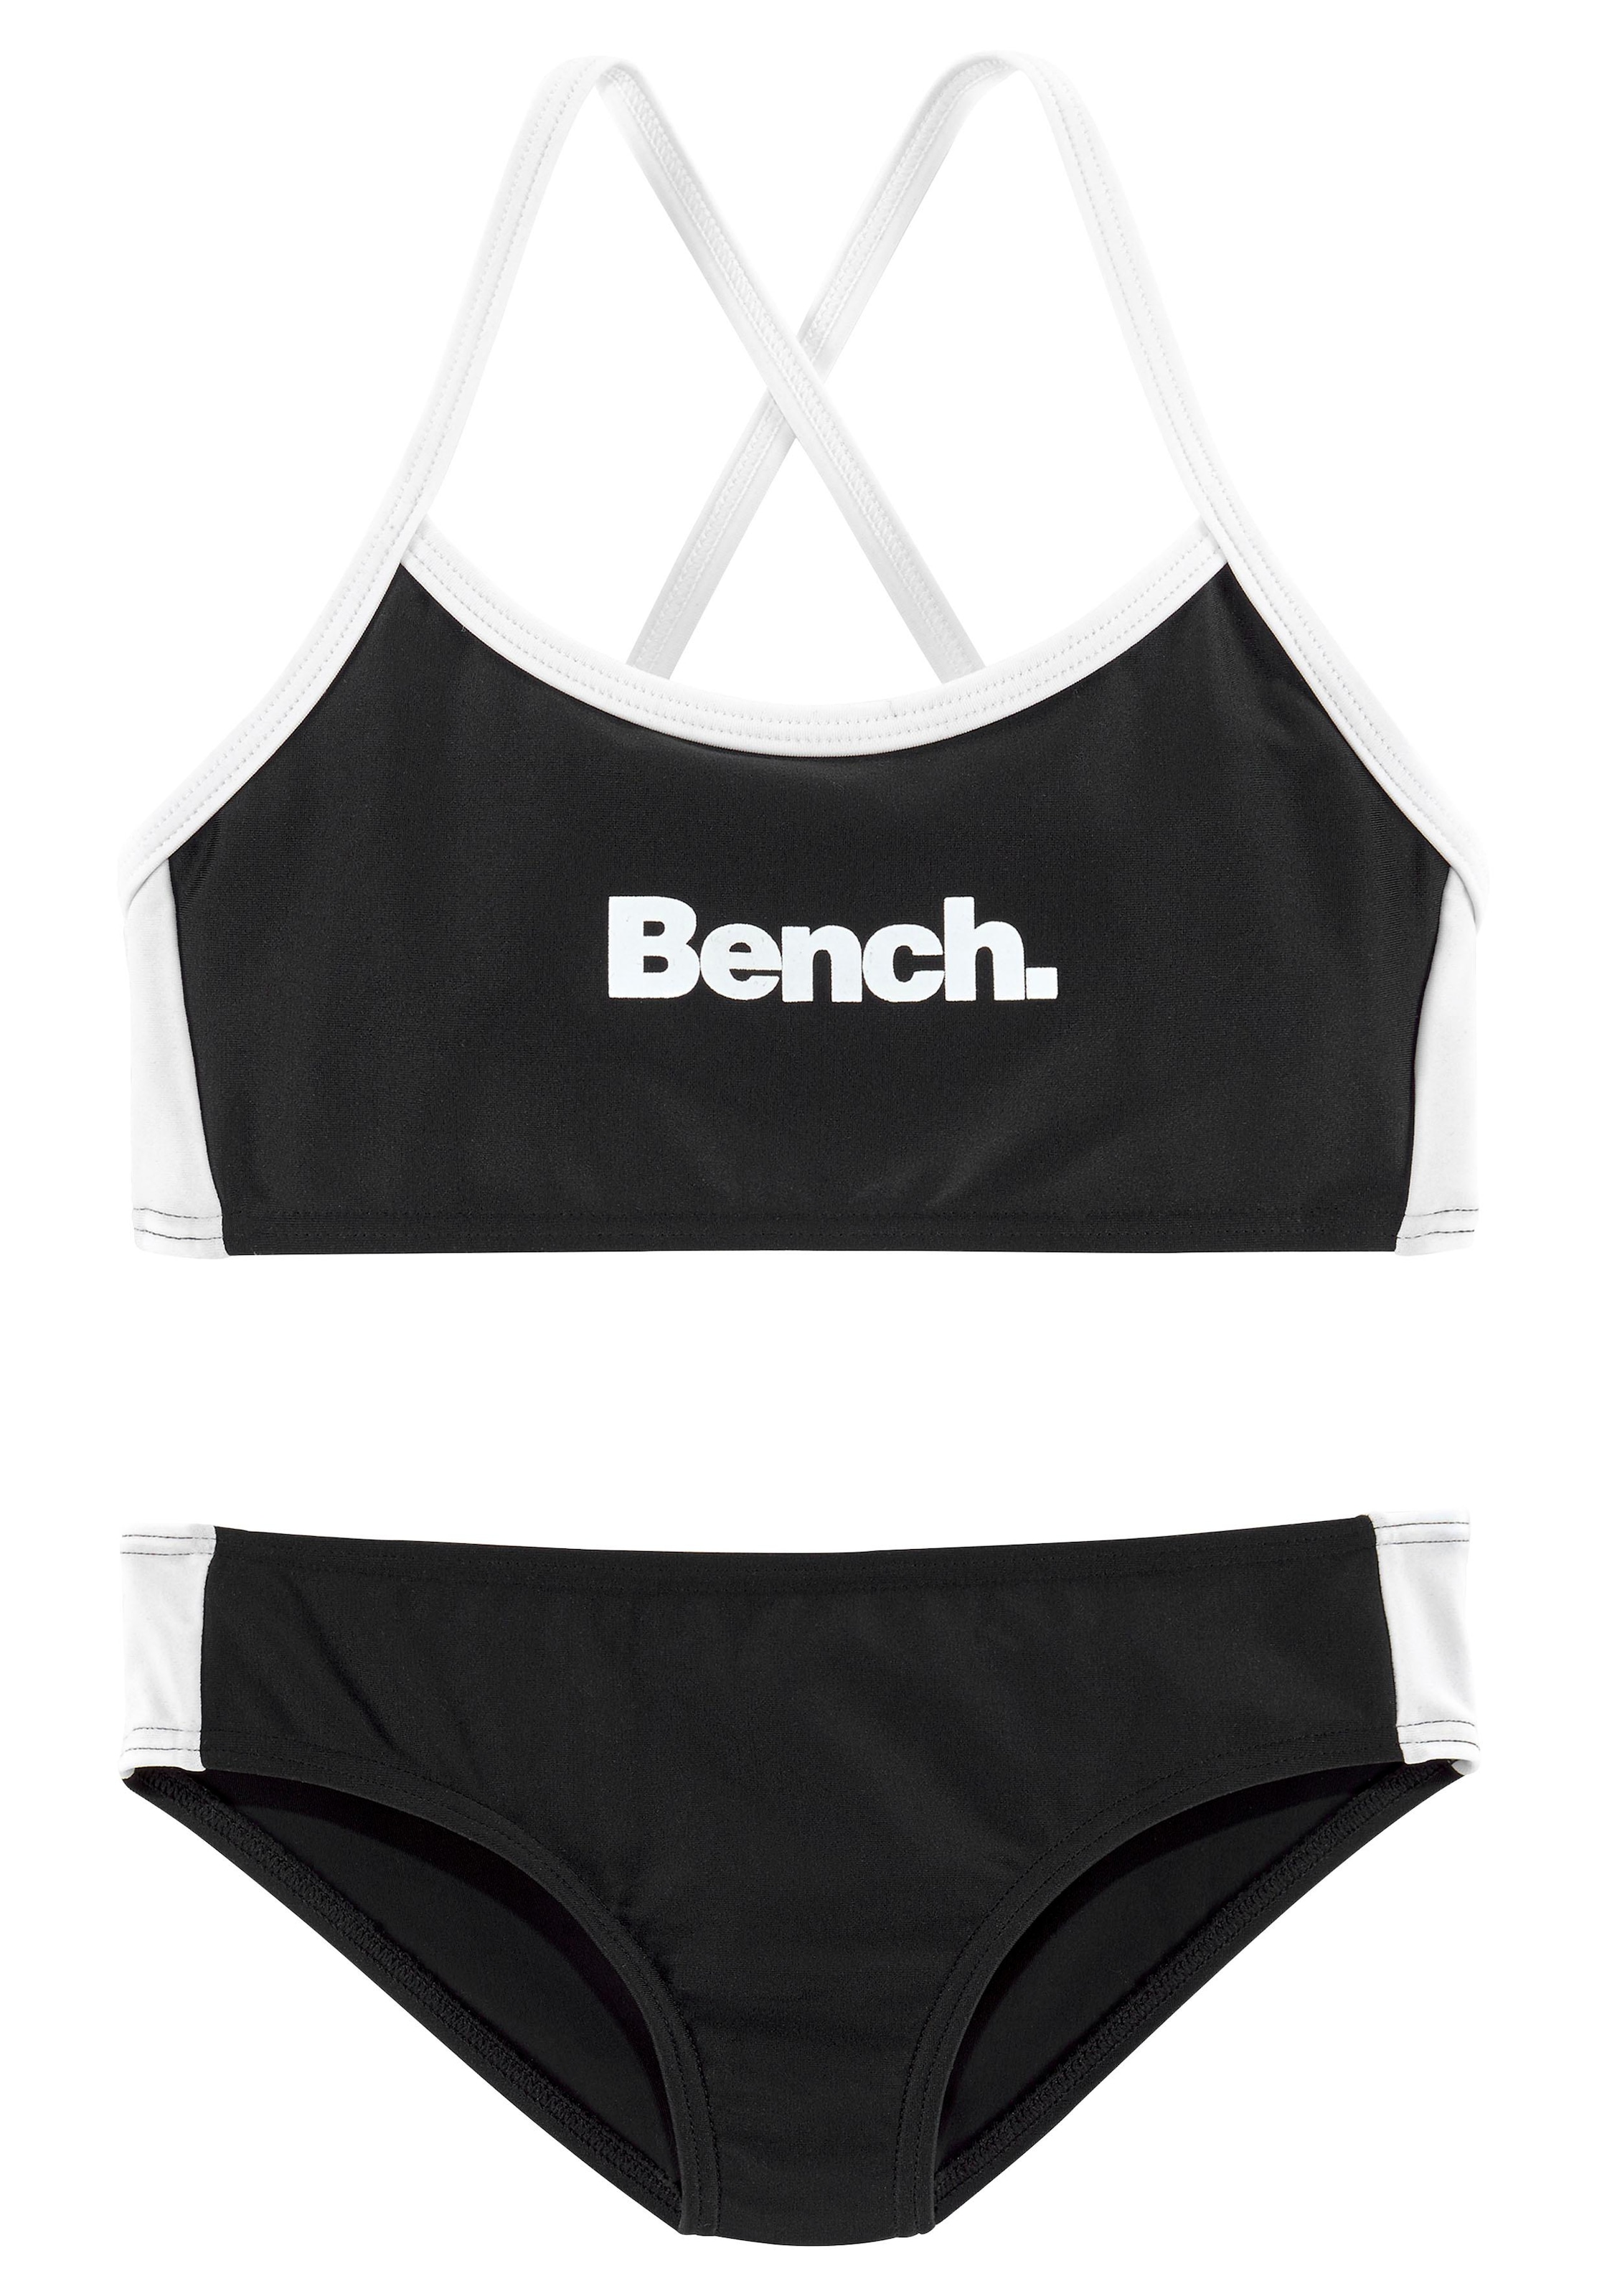 bestellen Bench. gekreuzten Bustier-Bikini, online Trägern mit